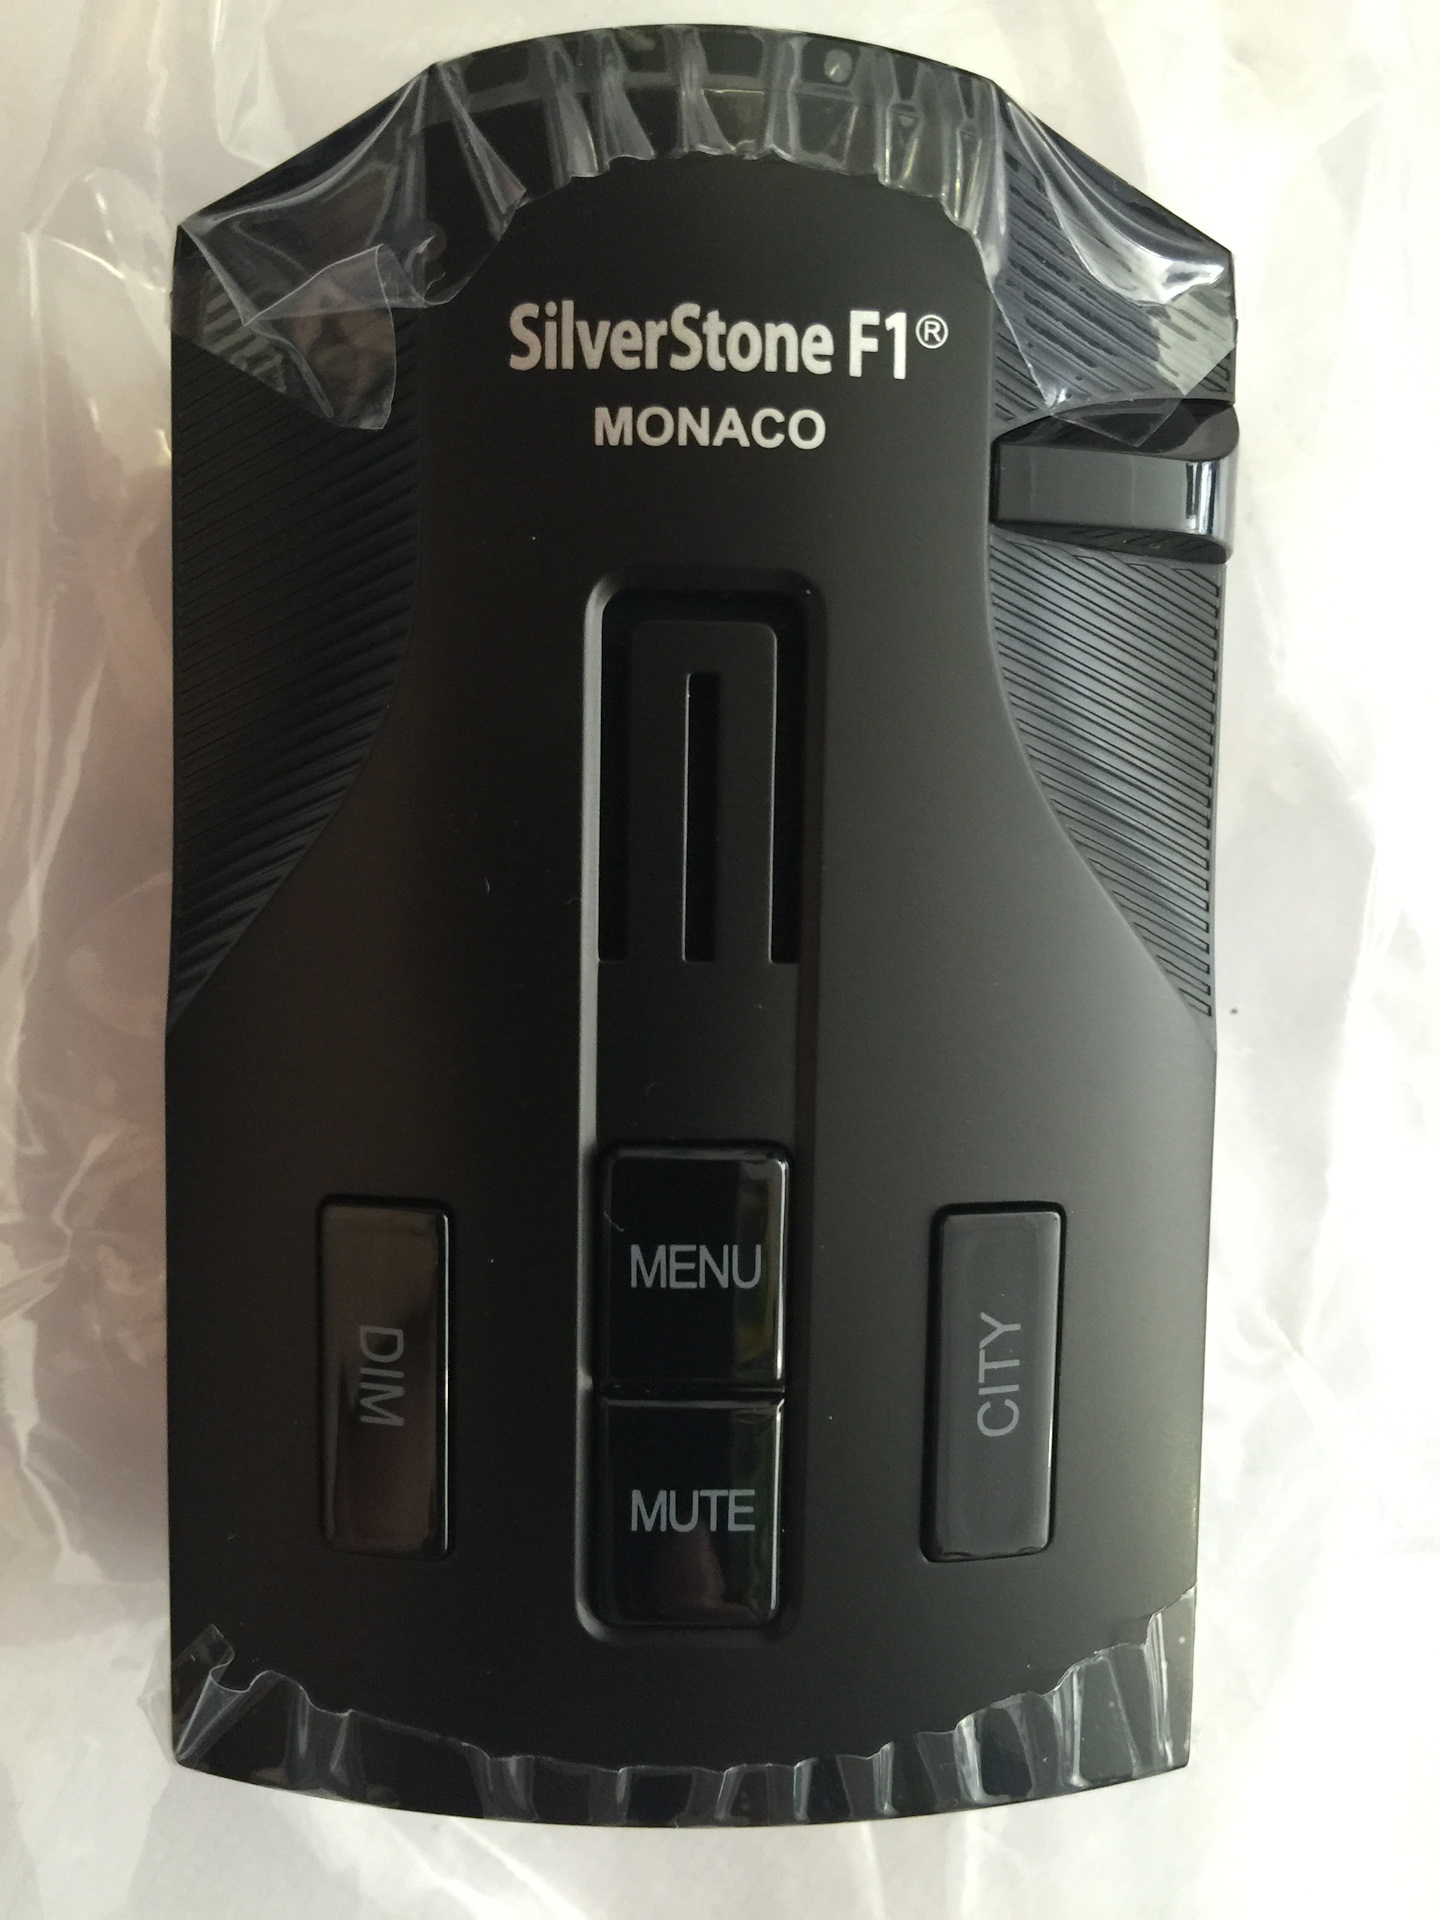 Купить радар детектор silverstone. Радар-детектор Silverstone. Антирадар Сильверстоун f1 Монако. Silverstone f1 антирадар кабель USB адаптер. Плата для антирадара Silverstone f1 Monaco.